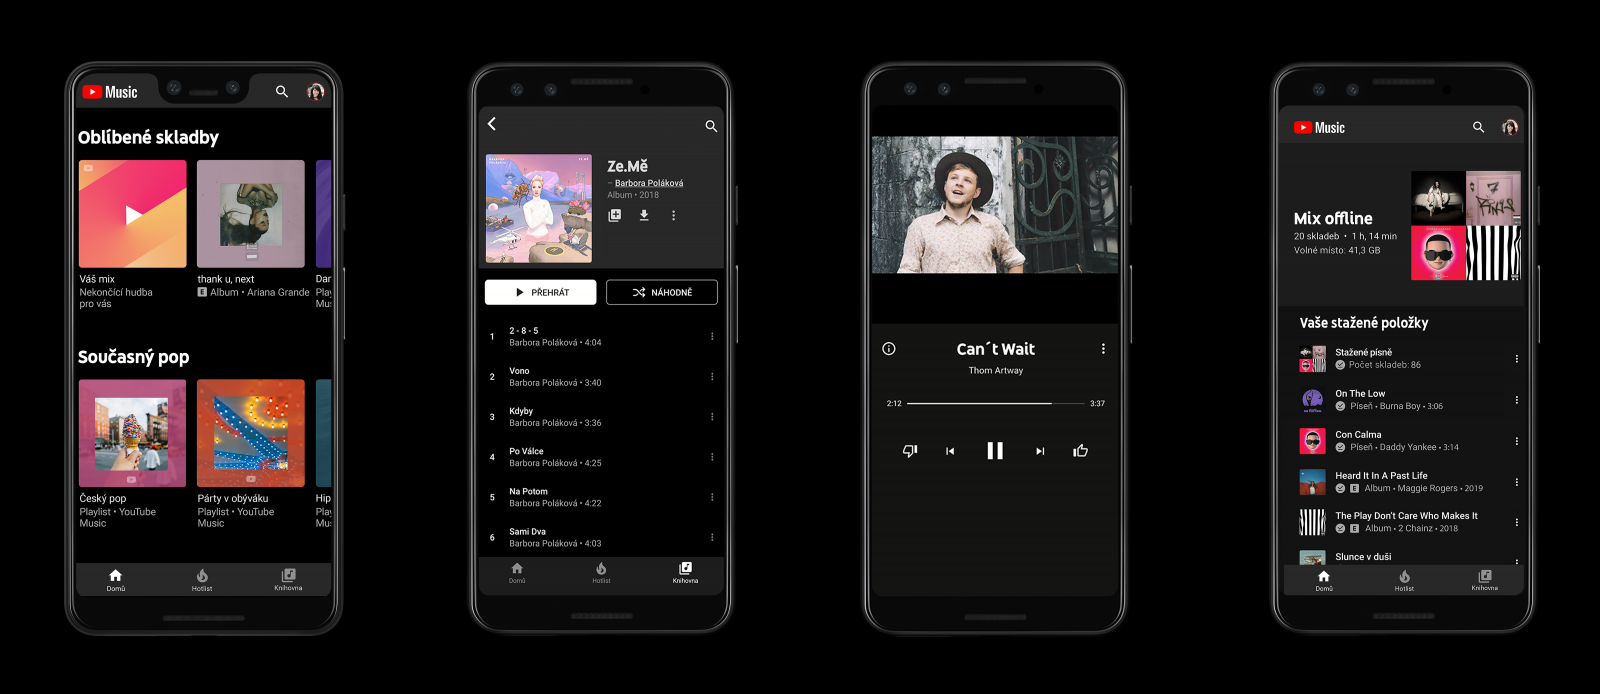 Google spouští v Česku aplikaci YouTube Music, bude konkurovat Spotify